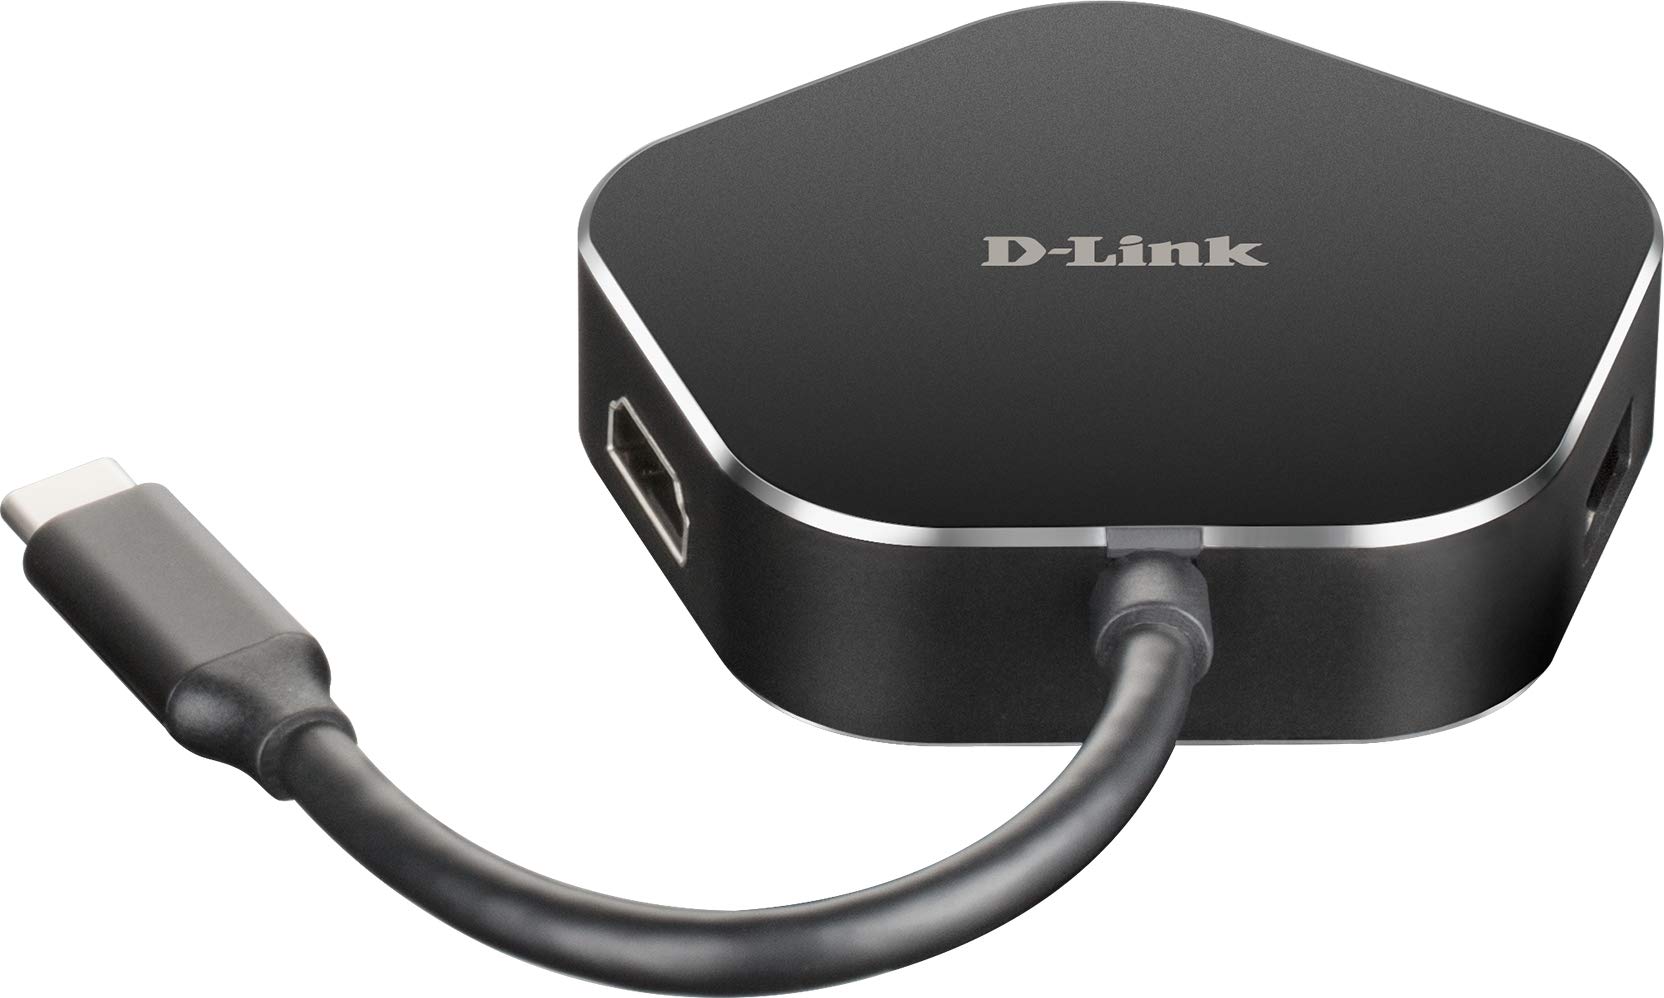 D-Link DUB-M420 USB Typ C Hub 4 in 1 USB C Adapter mit HDMI 4K und 1080p, 2 USB 3.0/USB2.0, 1 Port USB C für Ladegerät bis zu 60 W und Daten, ohne Installation, kompatibel mit Windows und Mac